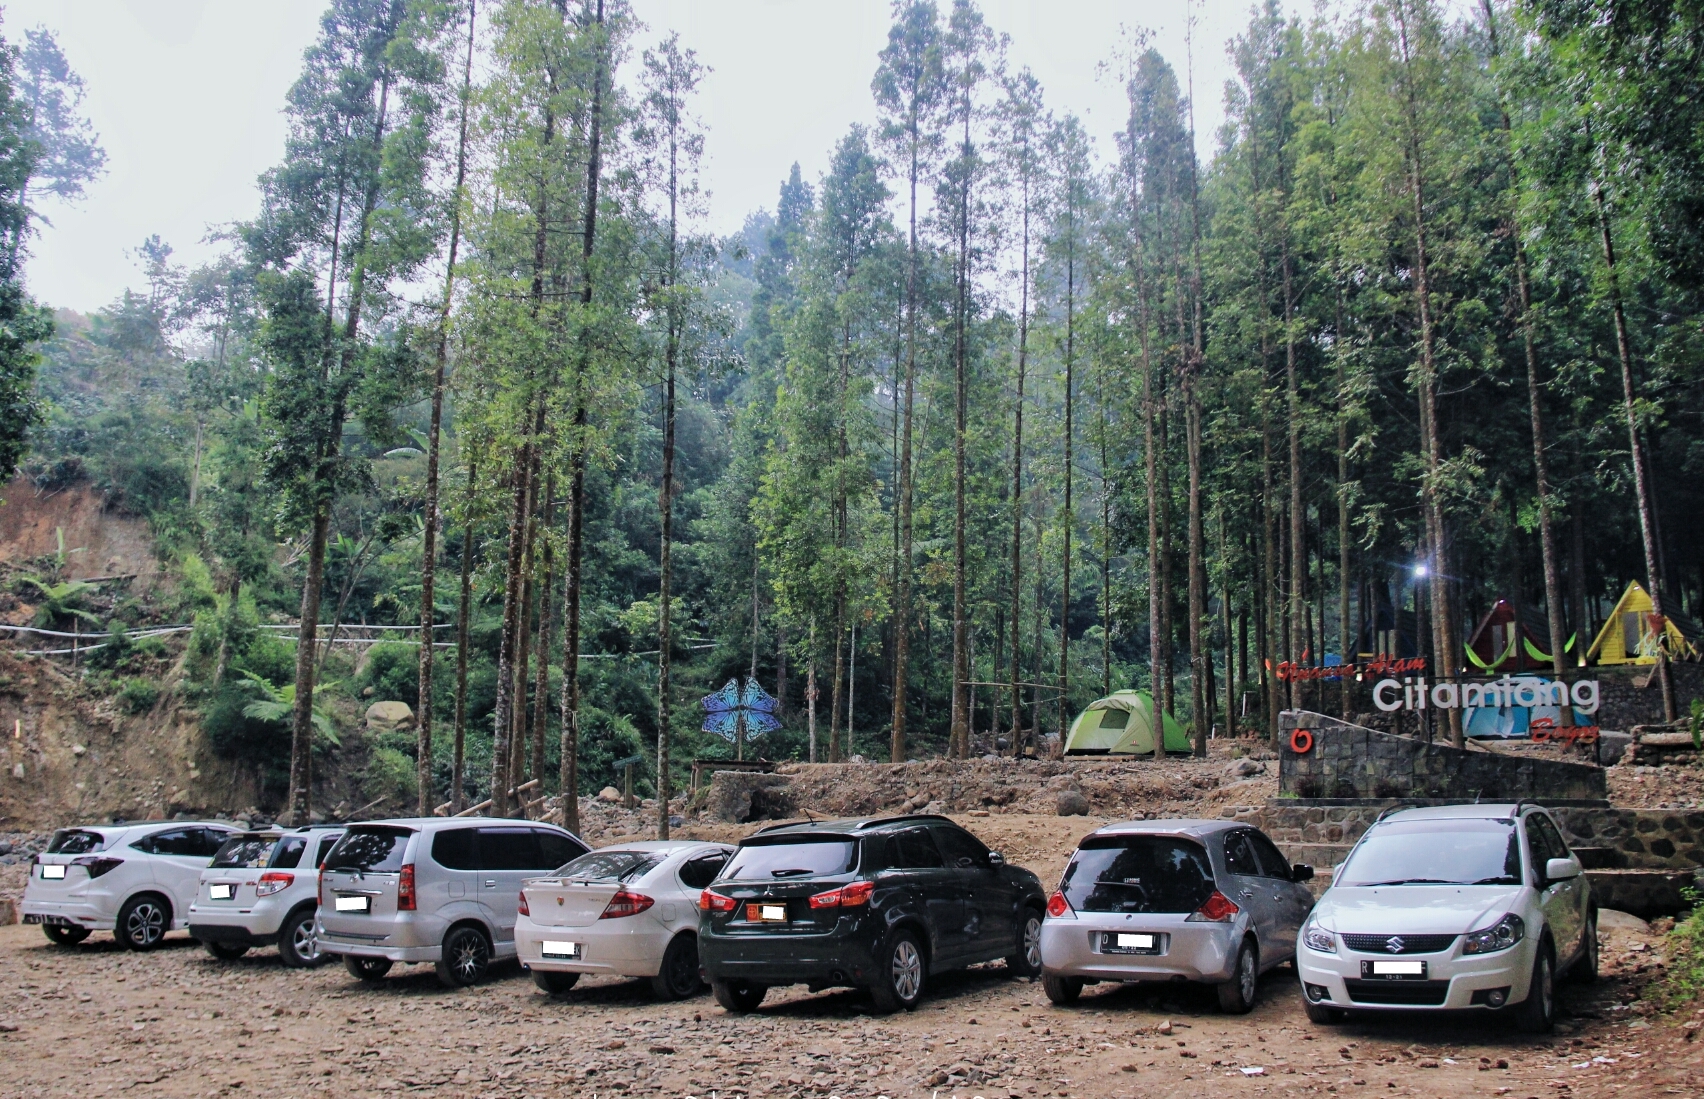 Nuansa Alam Citamiang, Camping Ground Asyik di Cisarua Bogor